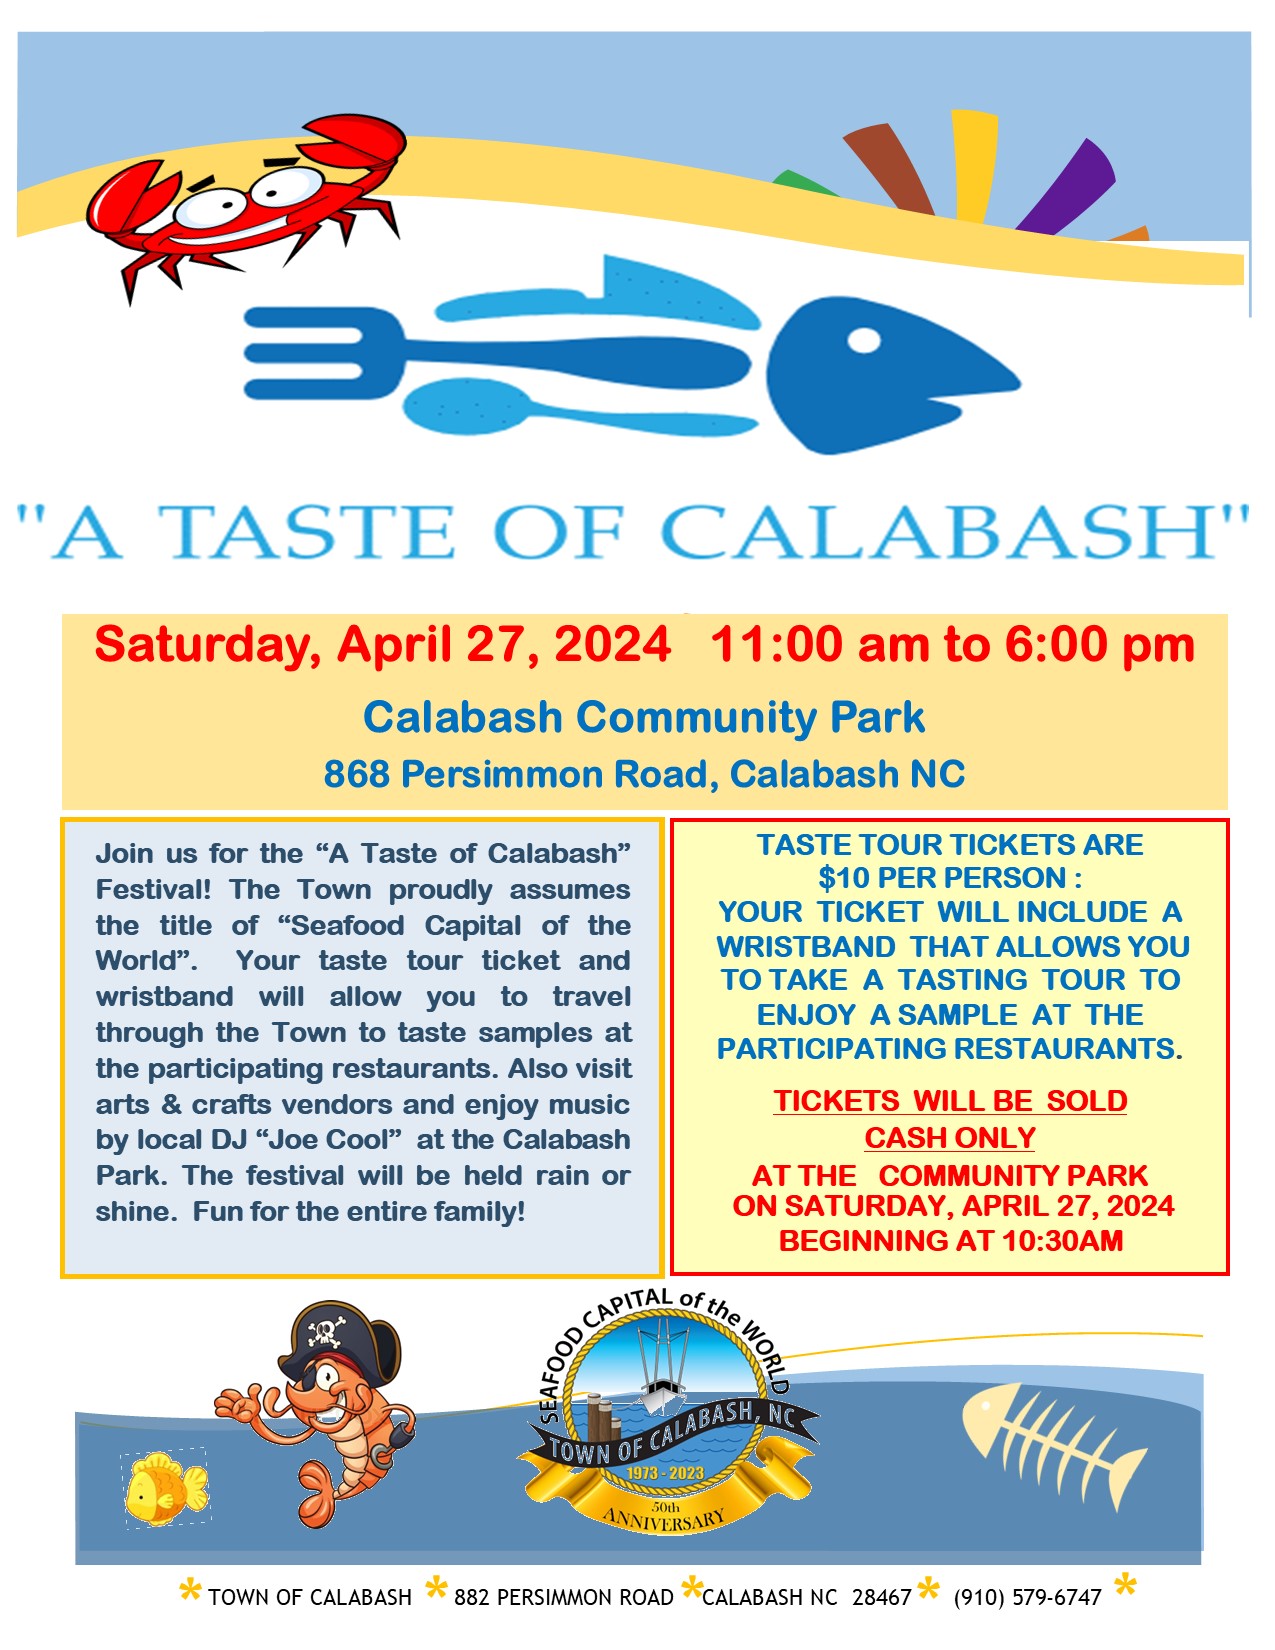 Taste of Calabash Event flyer 2024